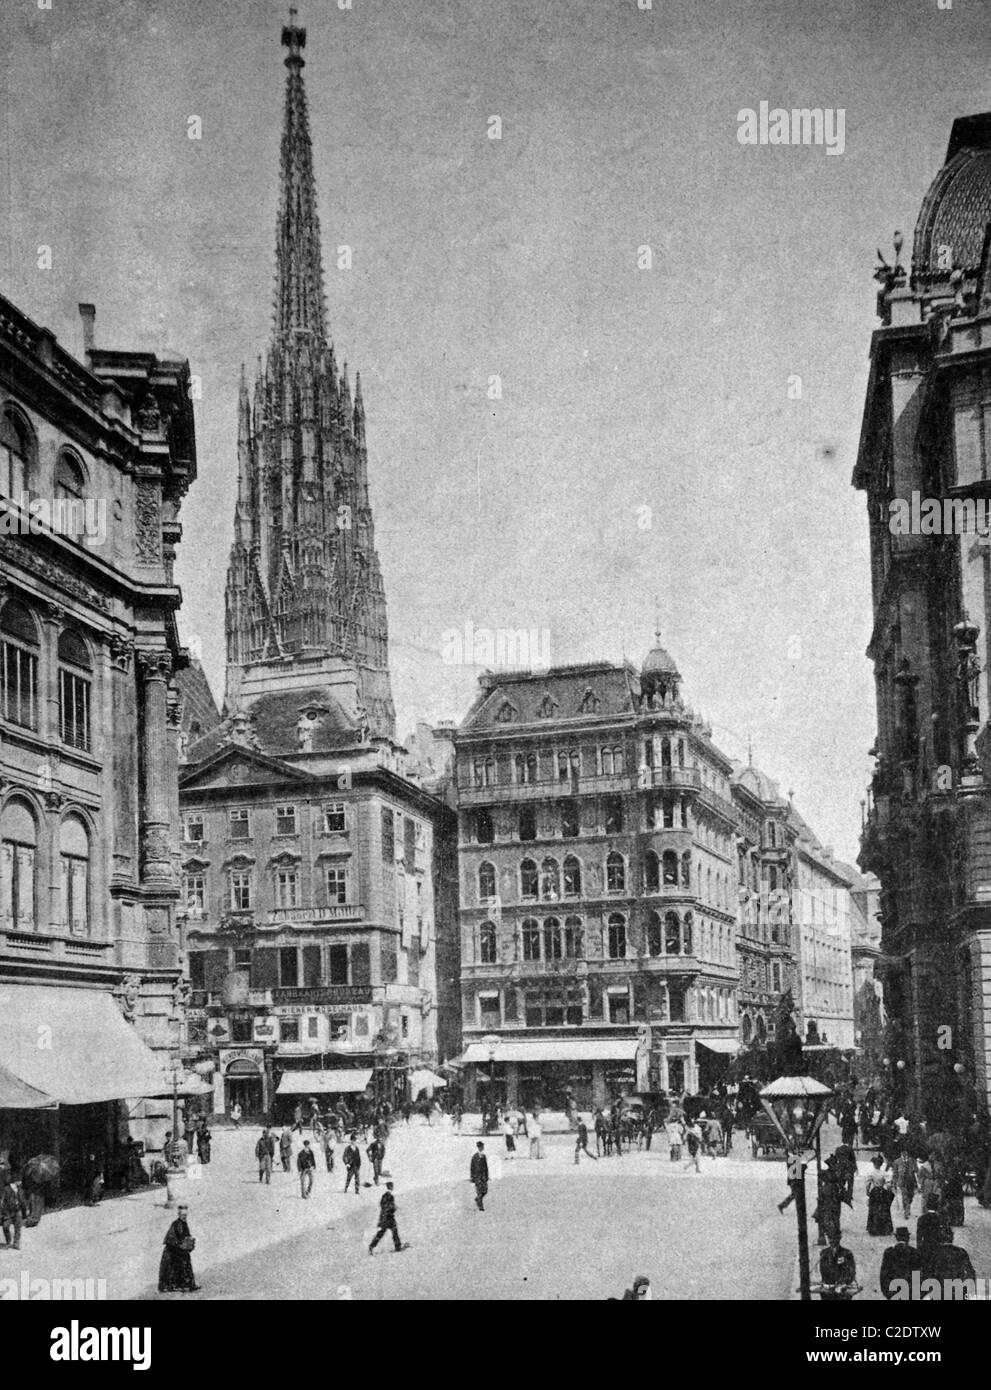 L'un des premiers tirages d'Autotype, place Stephansplatz, photographie historique, 1884, Vienne, Autriche, Europe Banque D'Images